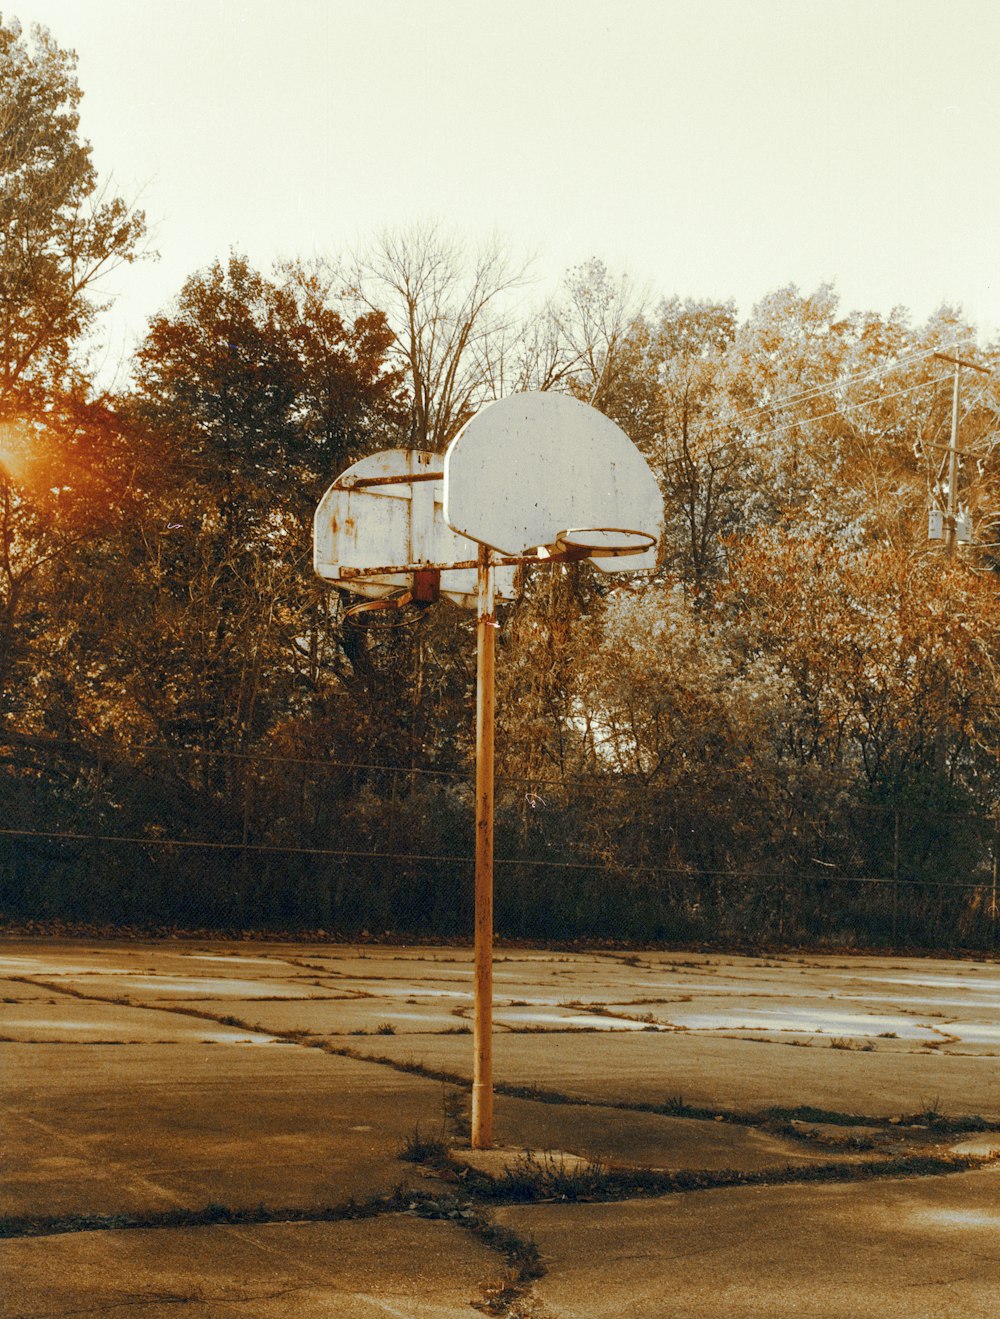 Aro de baloncesto blanco cerca de los árboles durante el día